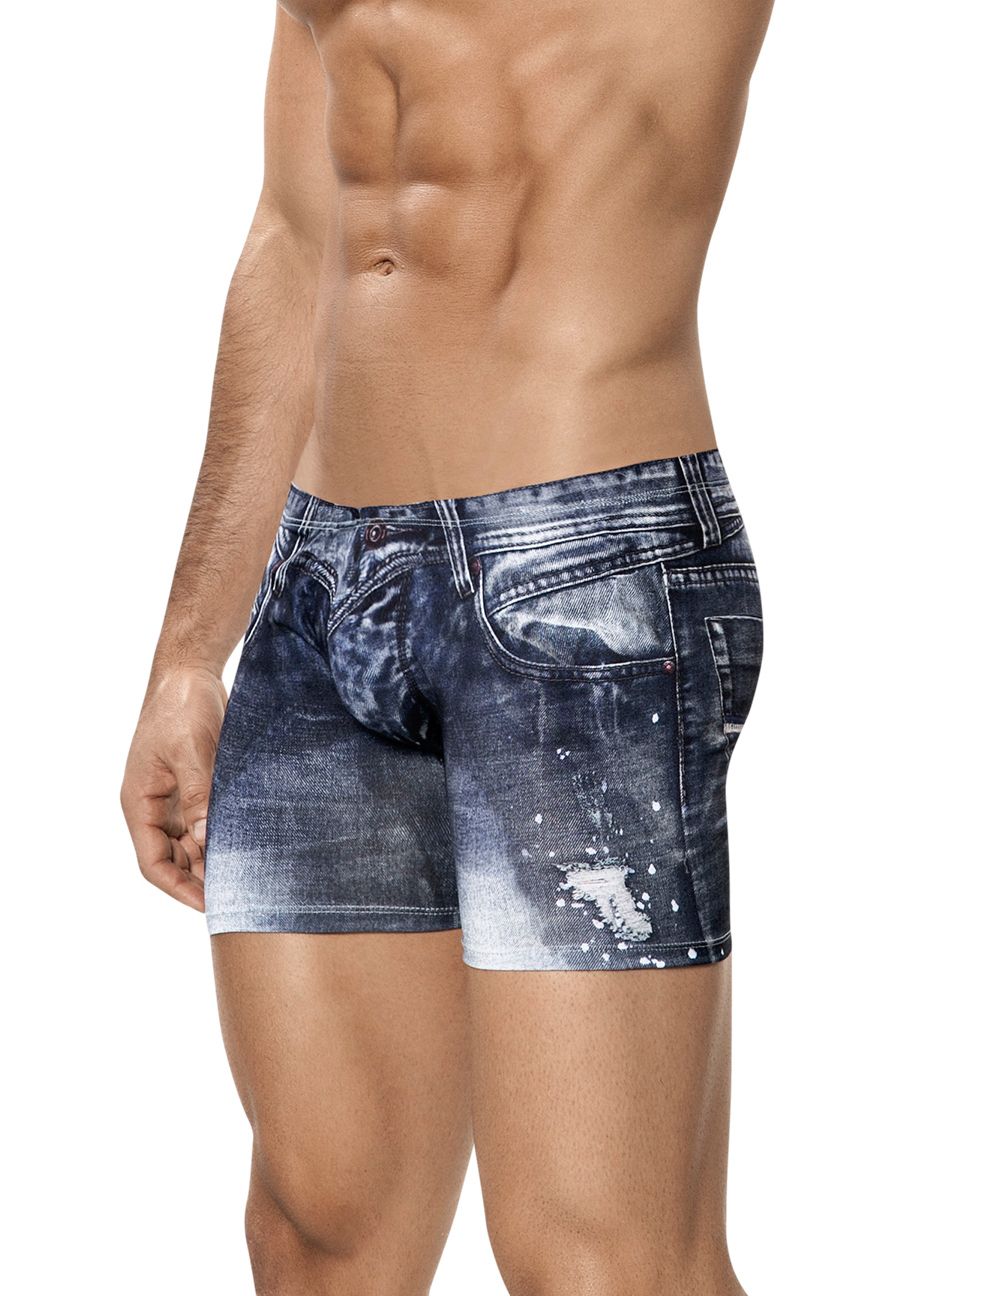 Clever Underwear Indigo Jean Boxer | Shop MensUnderwear.io